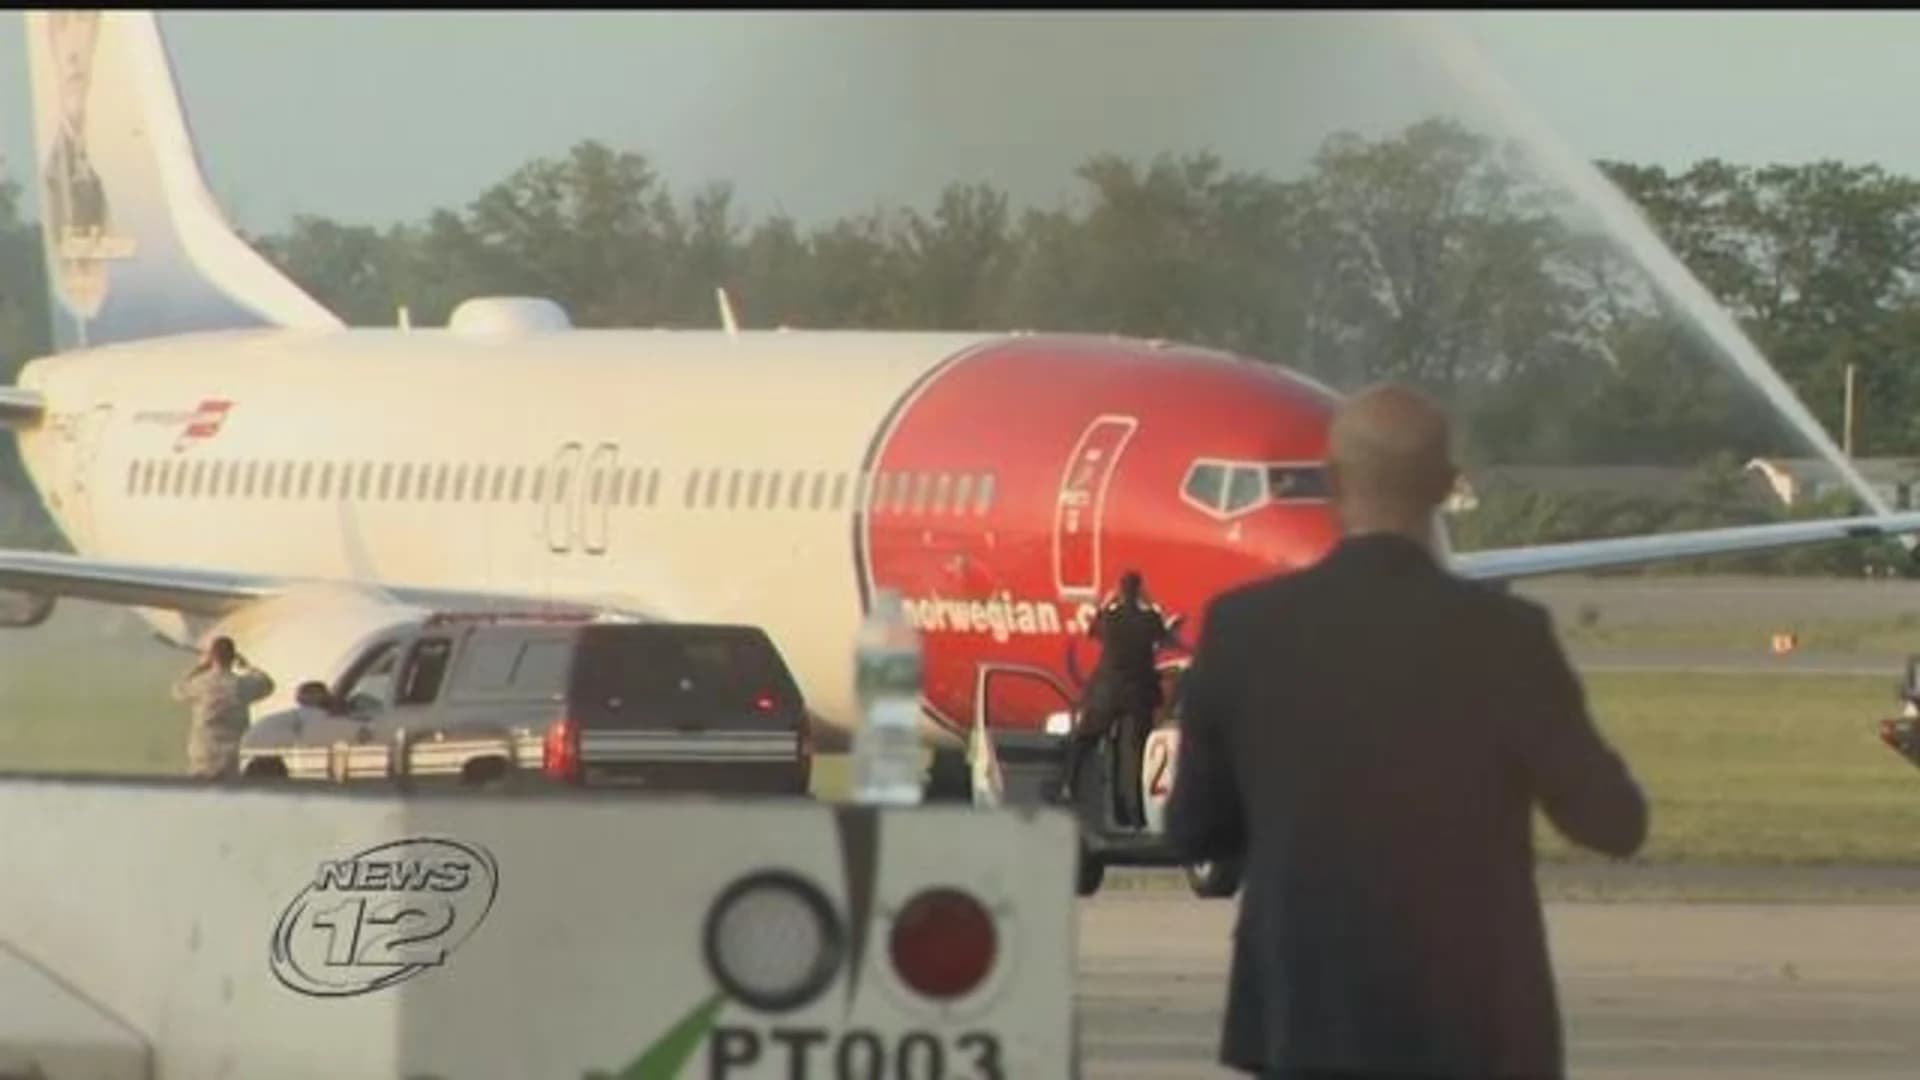 Airline turns away passengers at Stewart after flight deemed unsafe